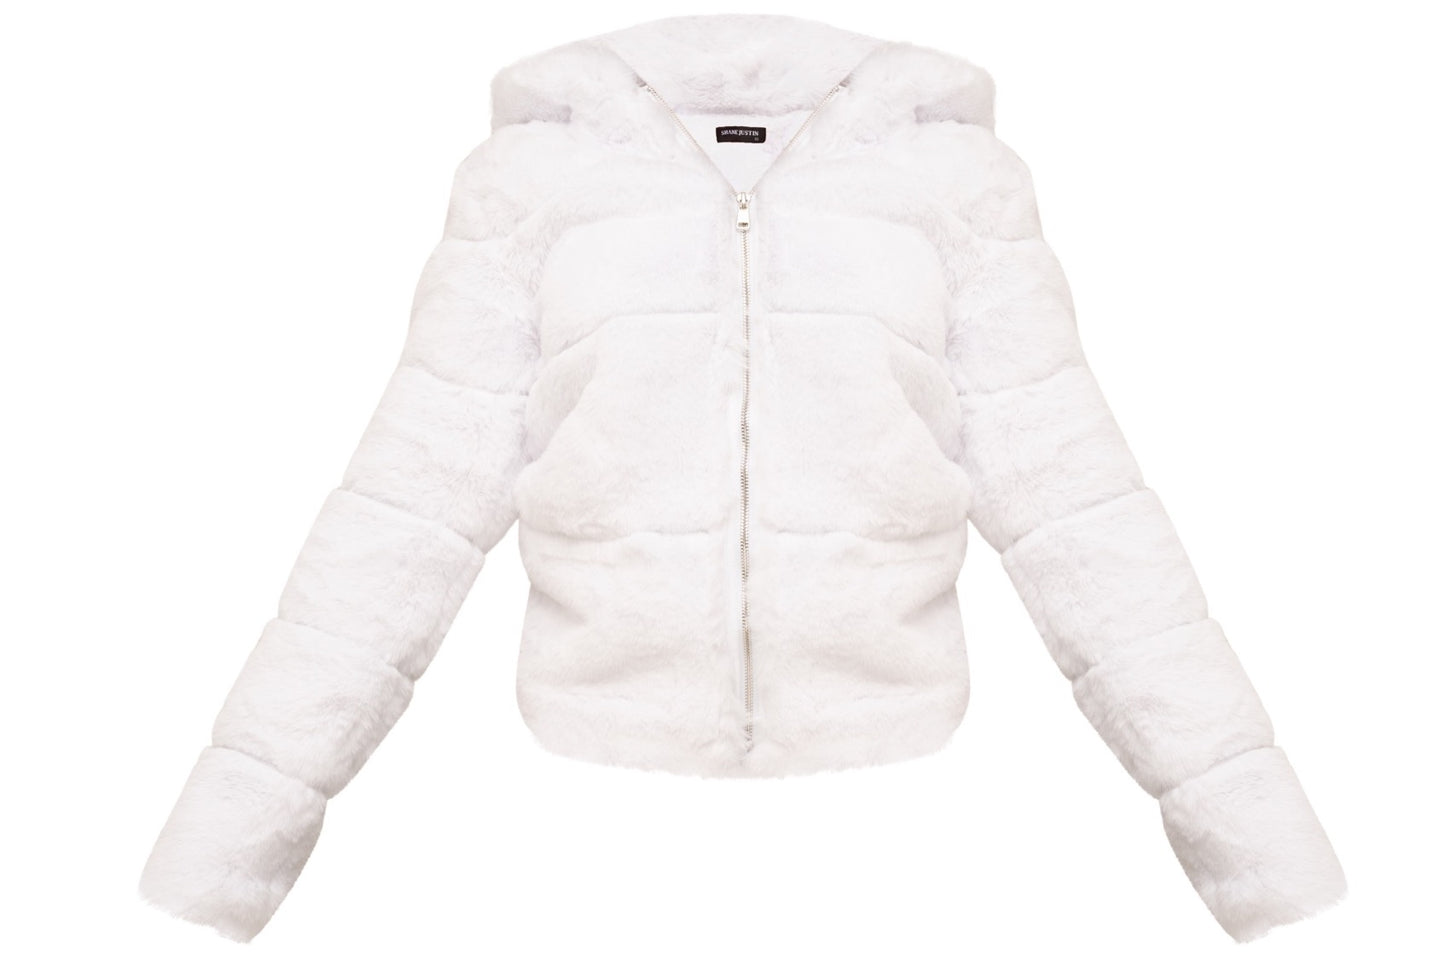 Unisex Fur Coat White